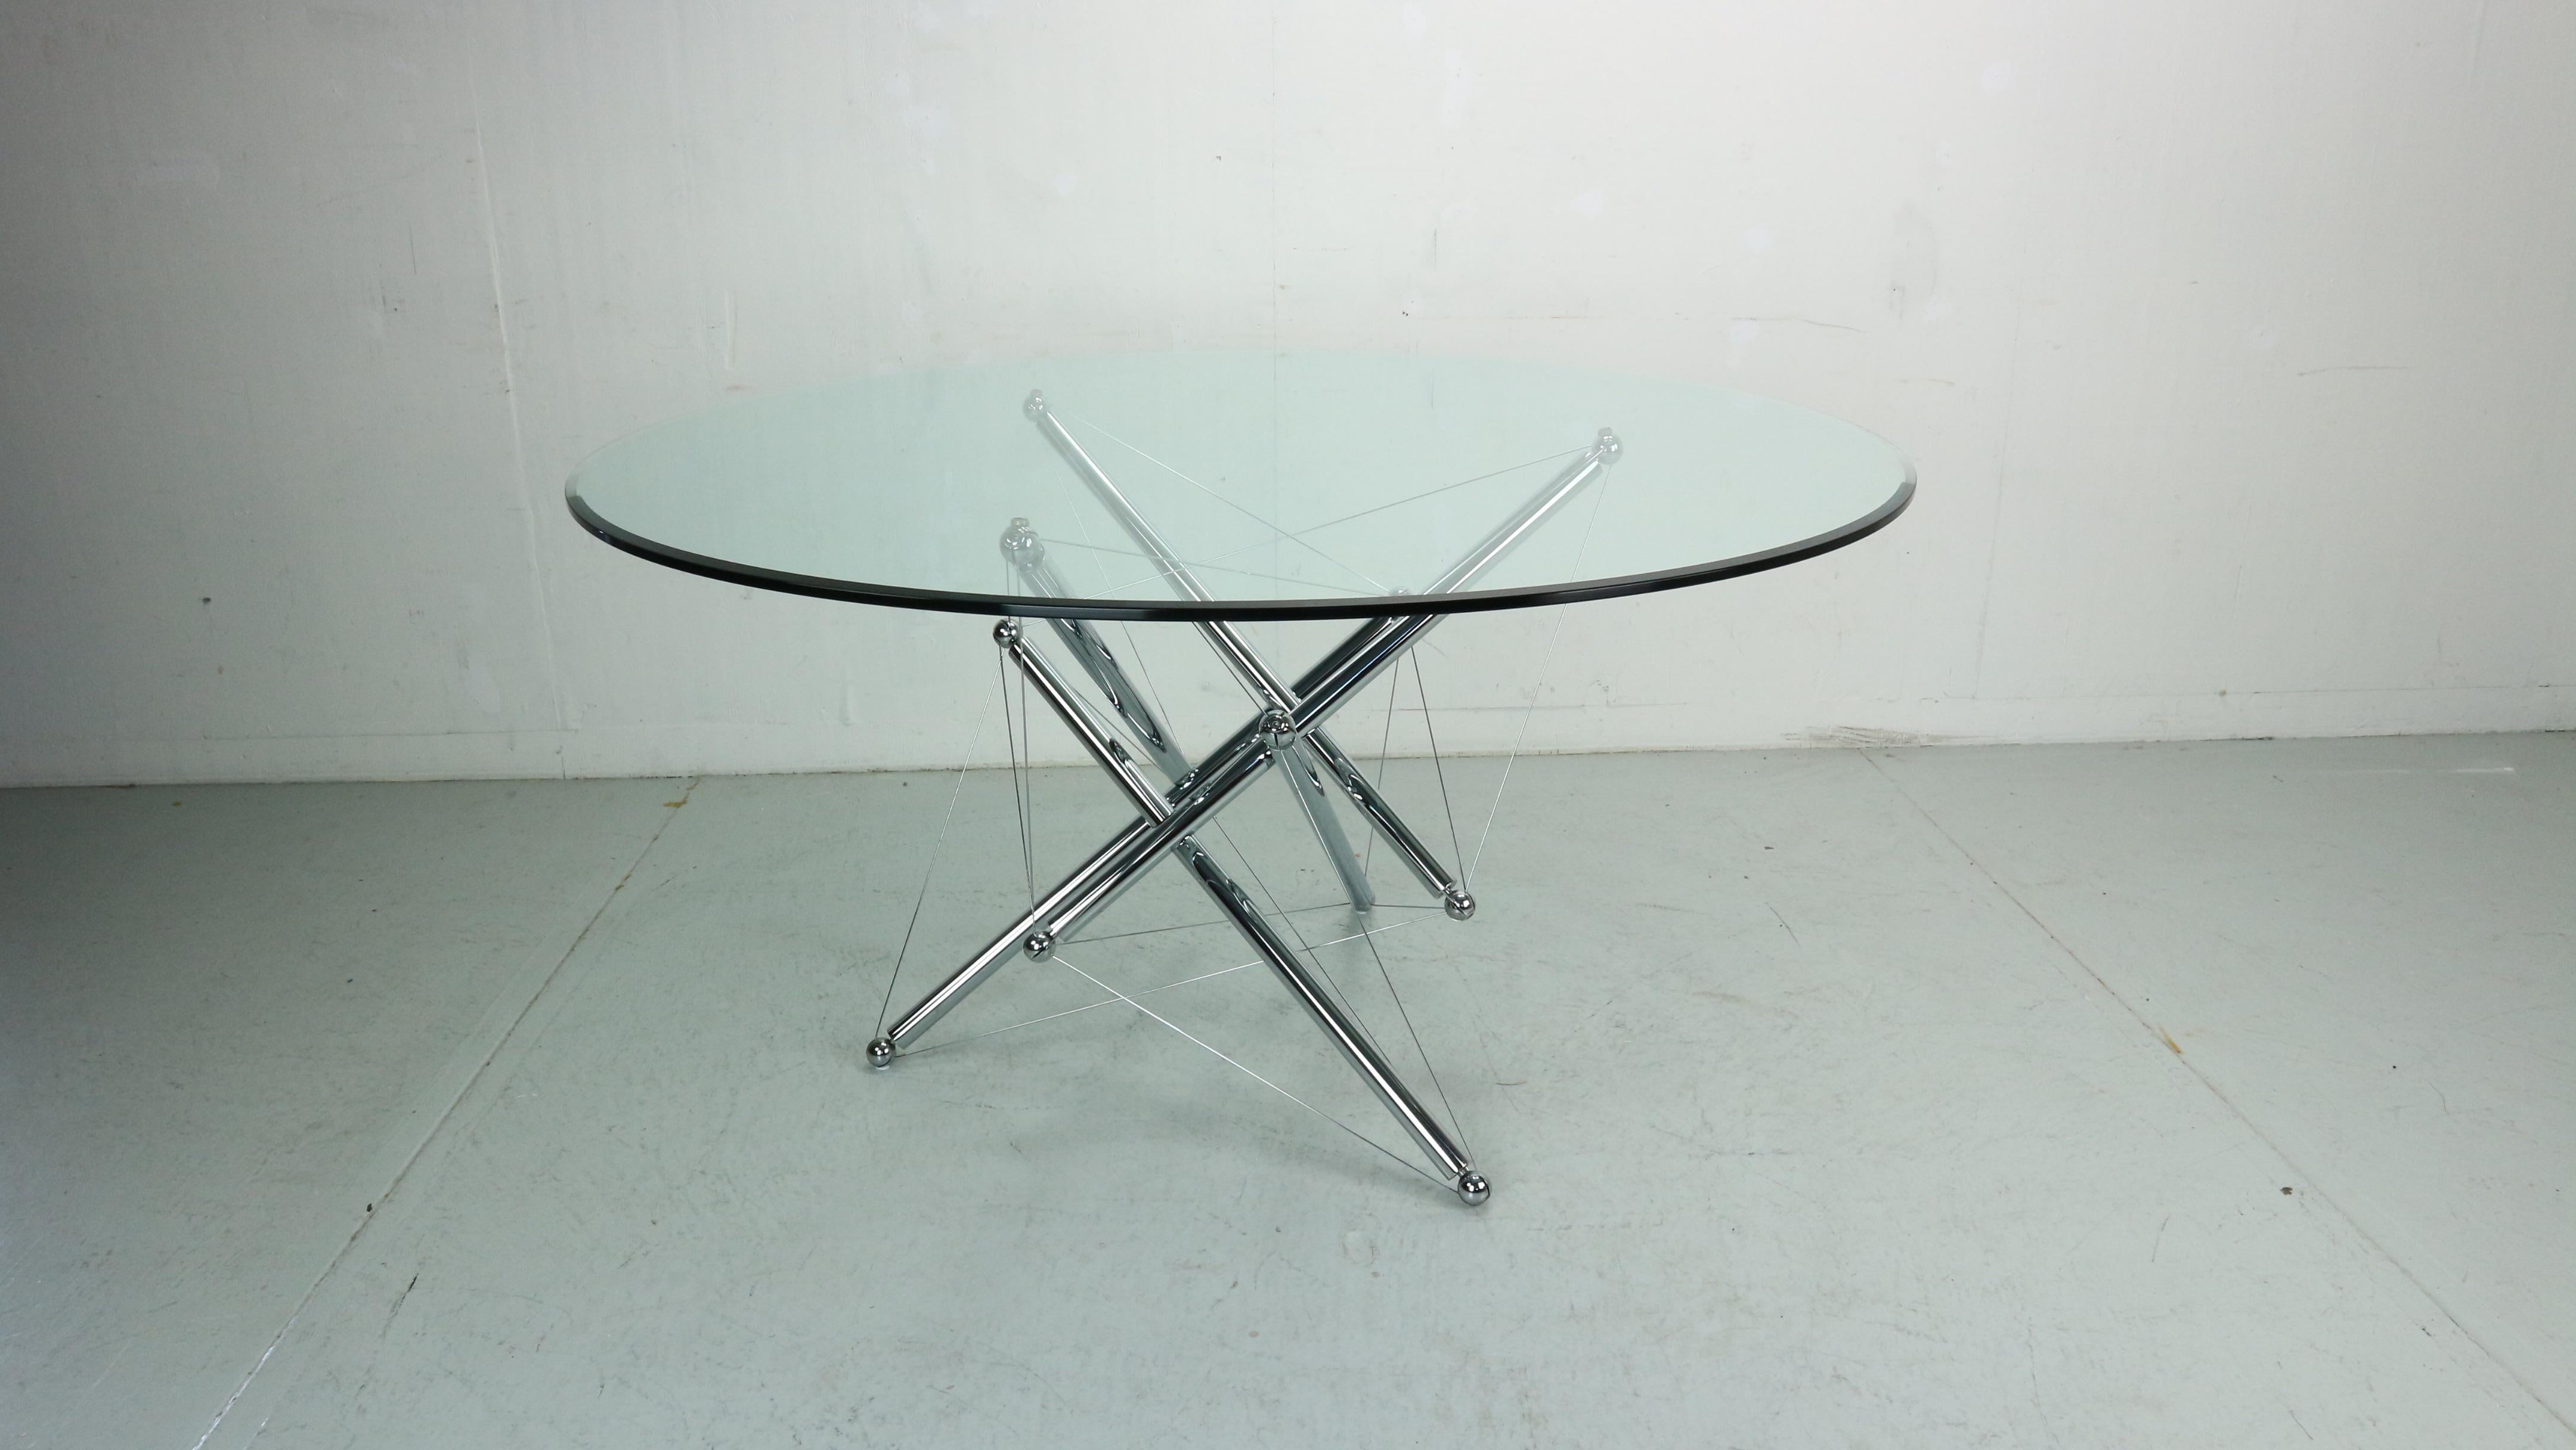 Skulpturaler und origineller Esstisch 714, hergestellt von Cassina. Dieser Tisch wurde von Theodore Waddell entworfen, der sich dabei von Buckminster Fullers Zug- und Tensegrity-Strukturen inspirieren ließ. Der Sockel wirkt über Kabel tragend. Es